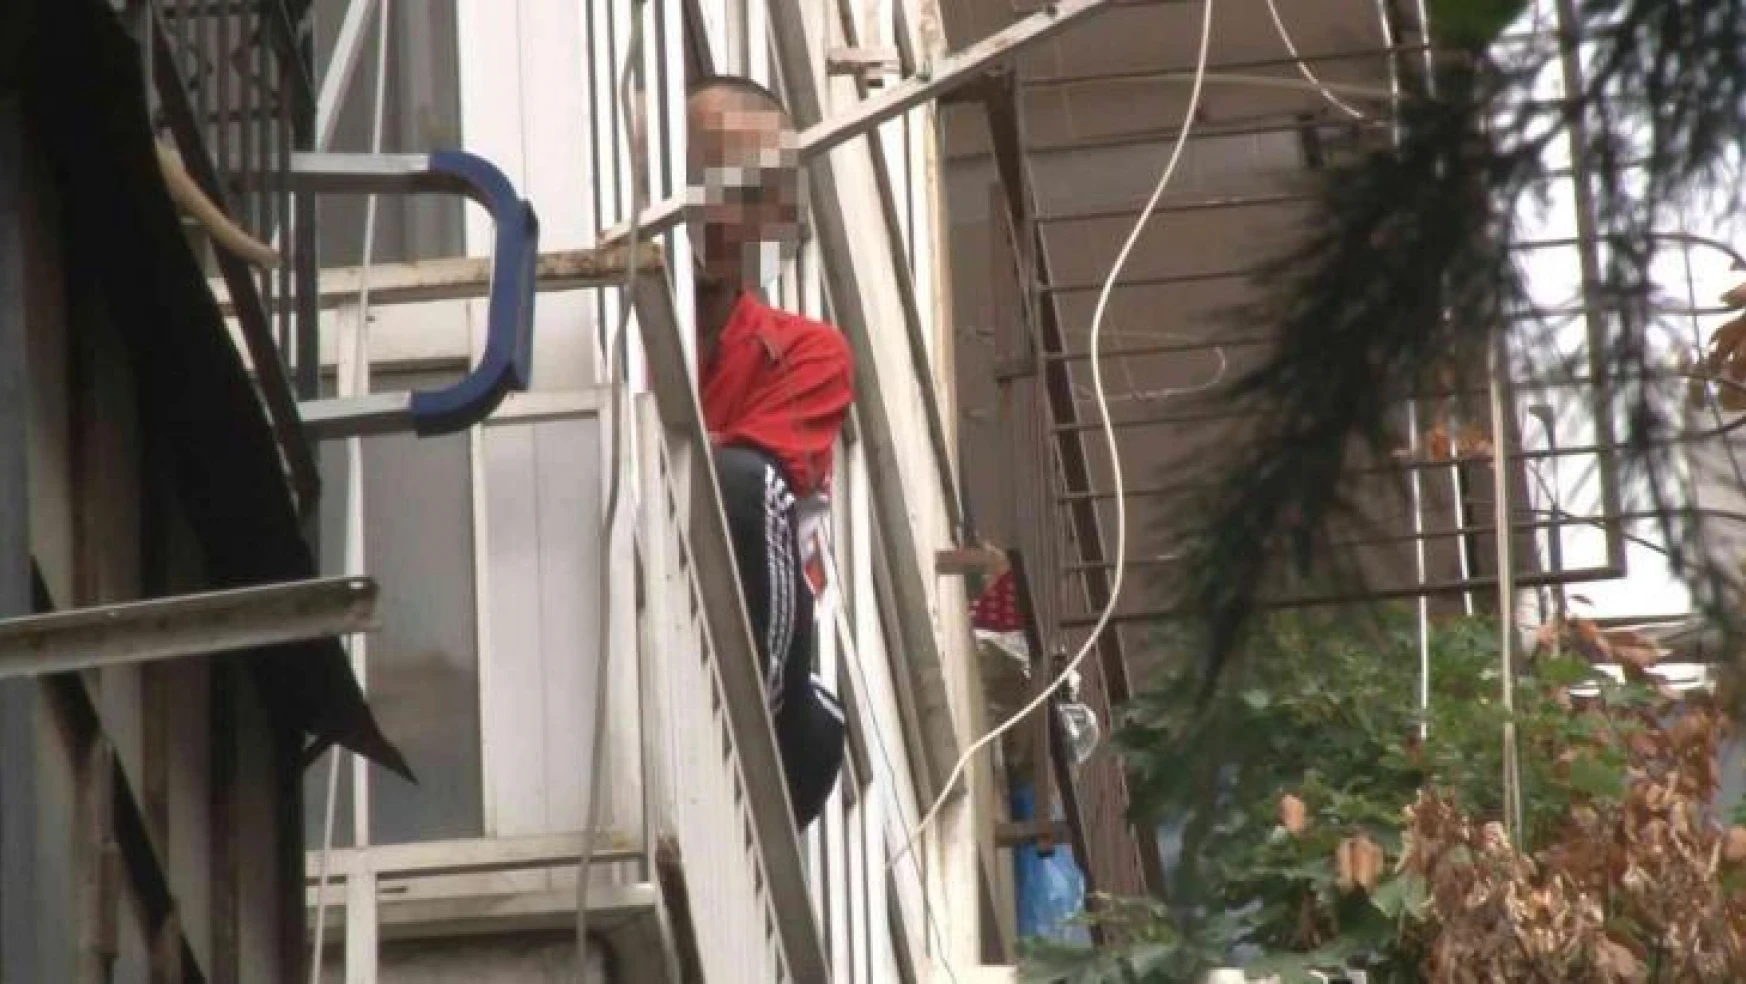 Kadıköy'de boşandığı eşinin evini bastı: 2 kişiyi yaraladı, kendini eve kapattı